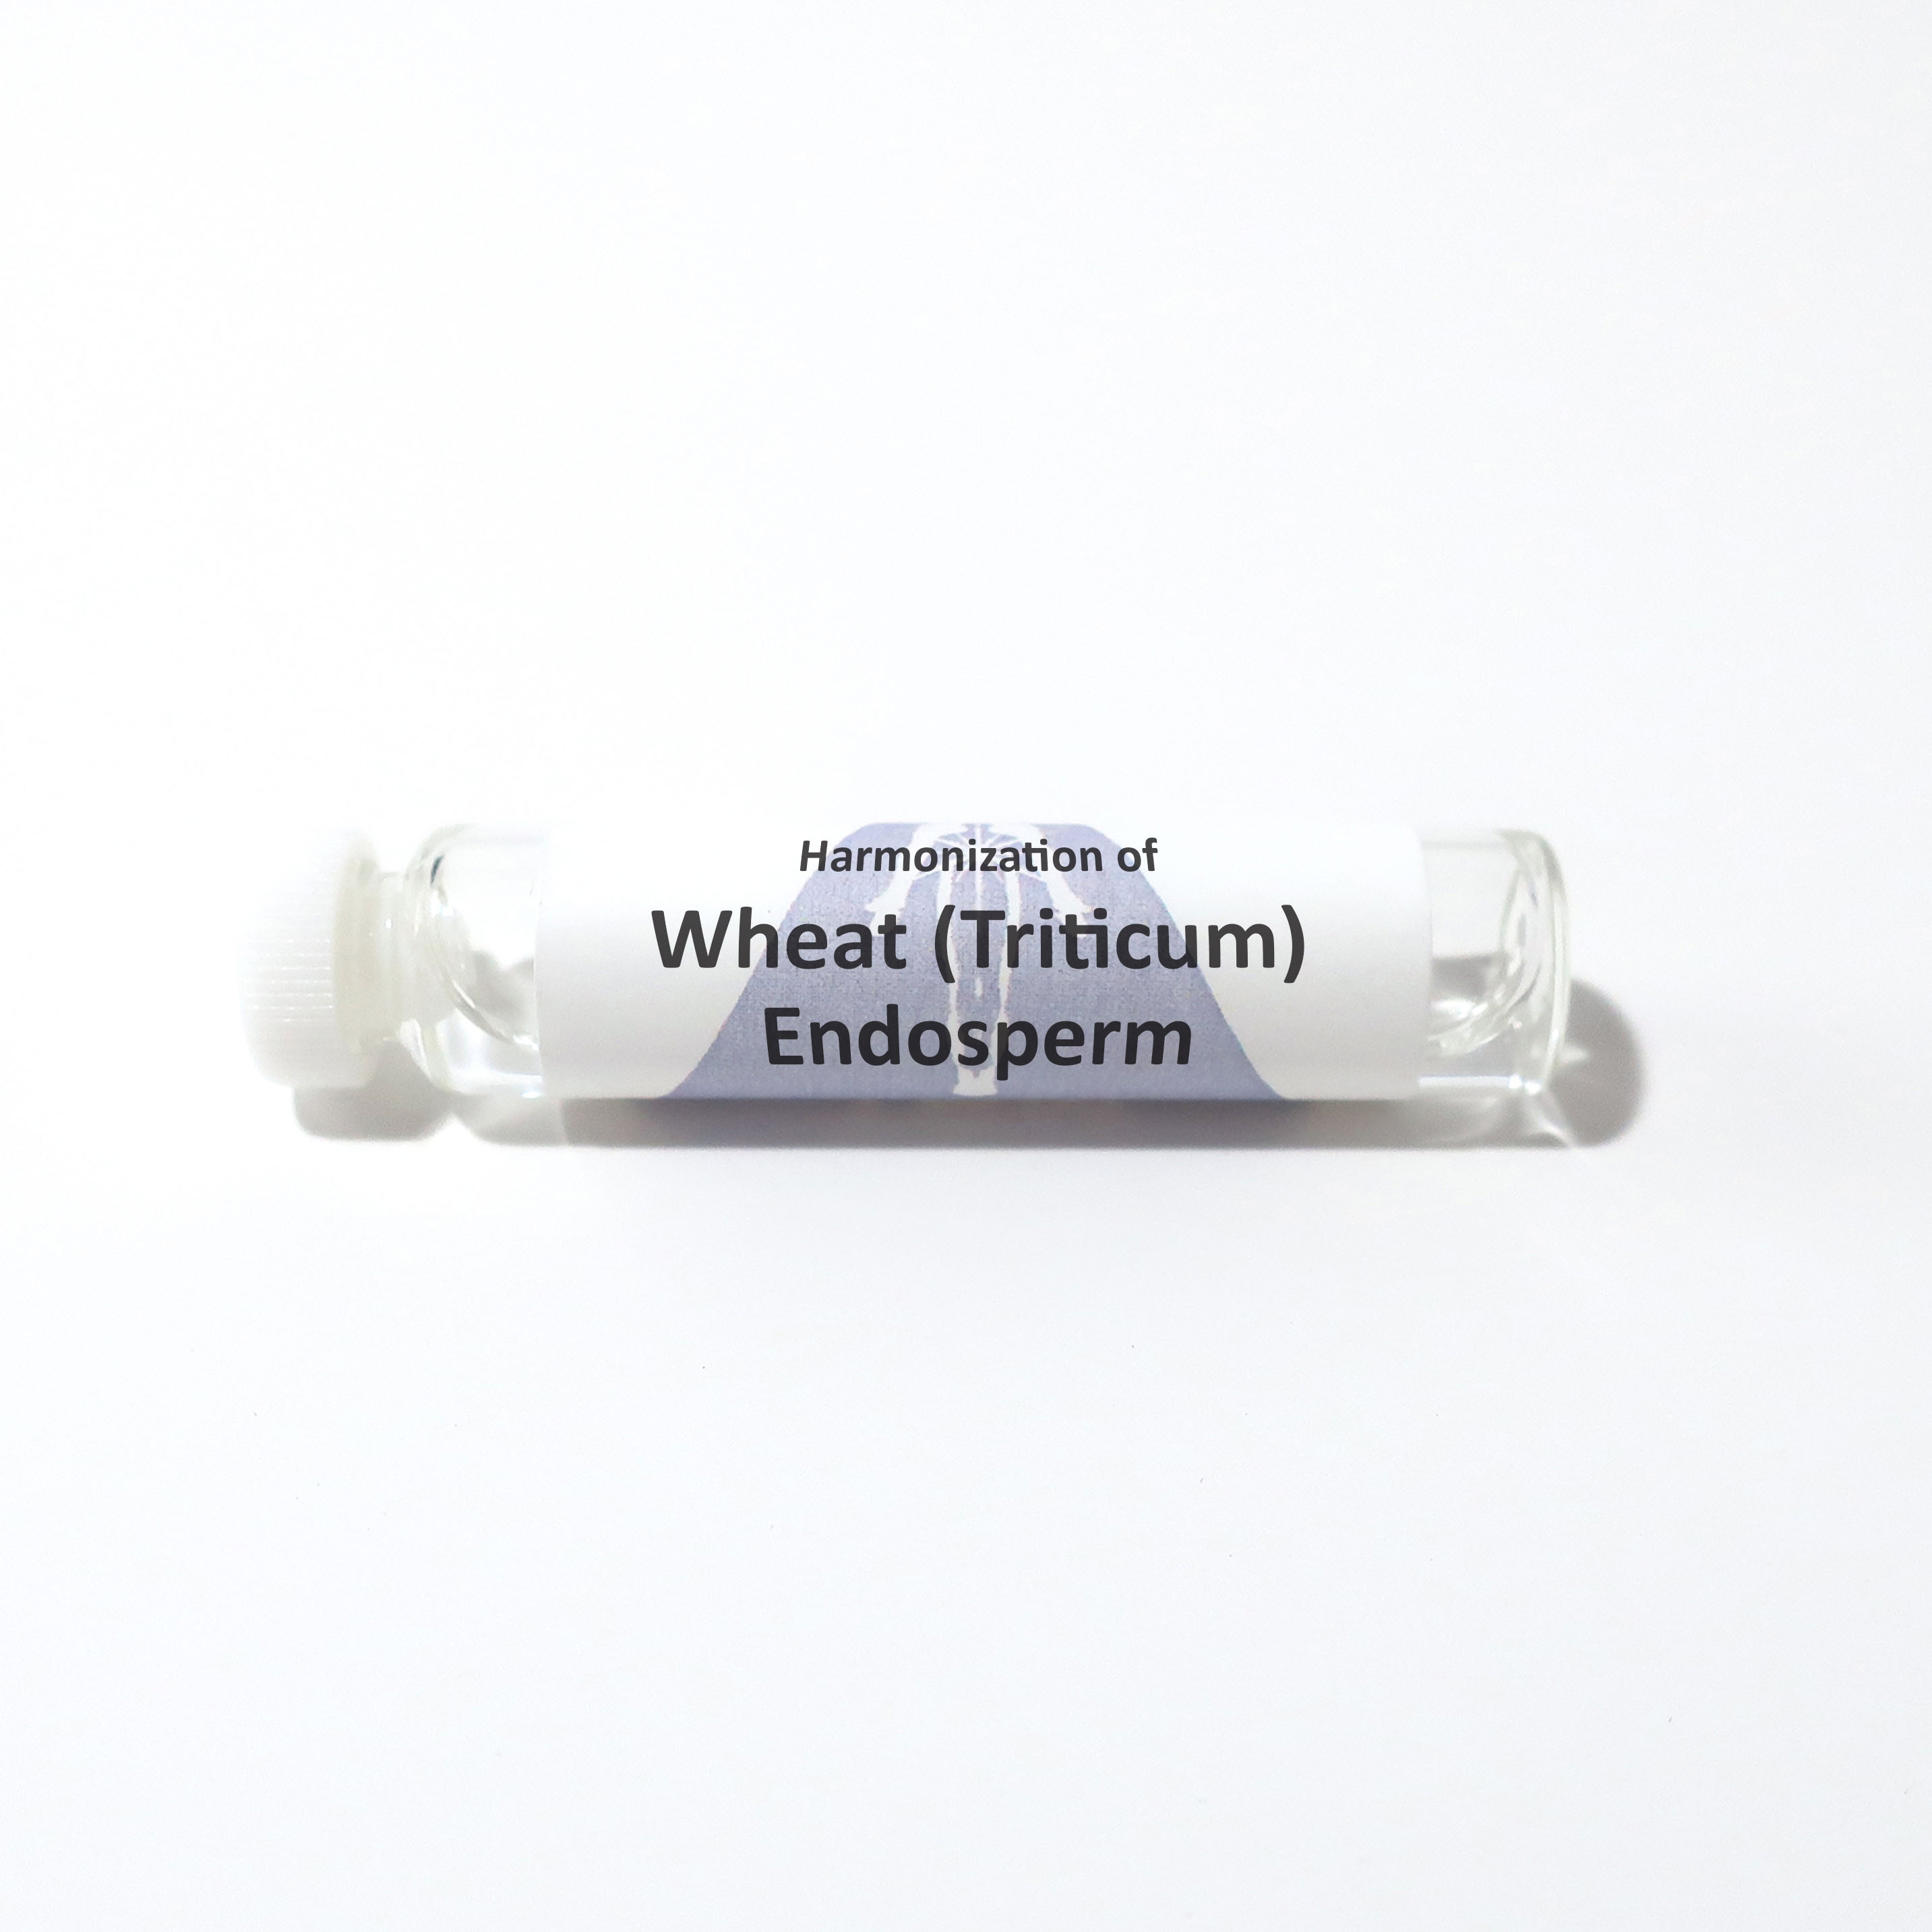 Wheat (Triticum) Endosperm